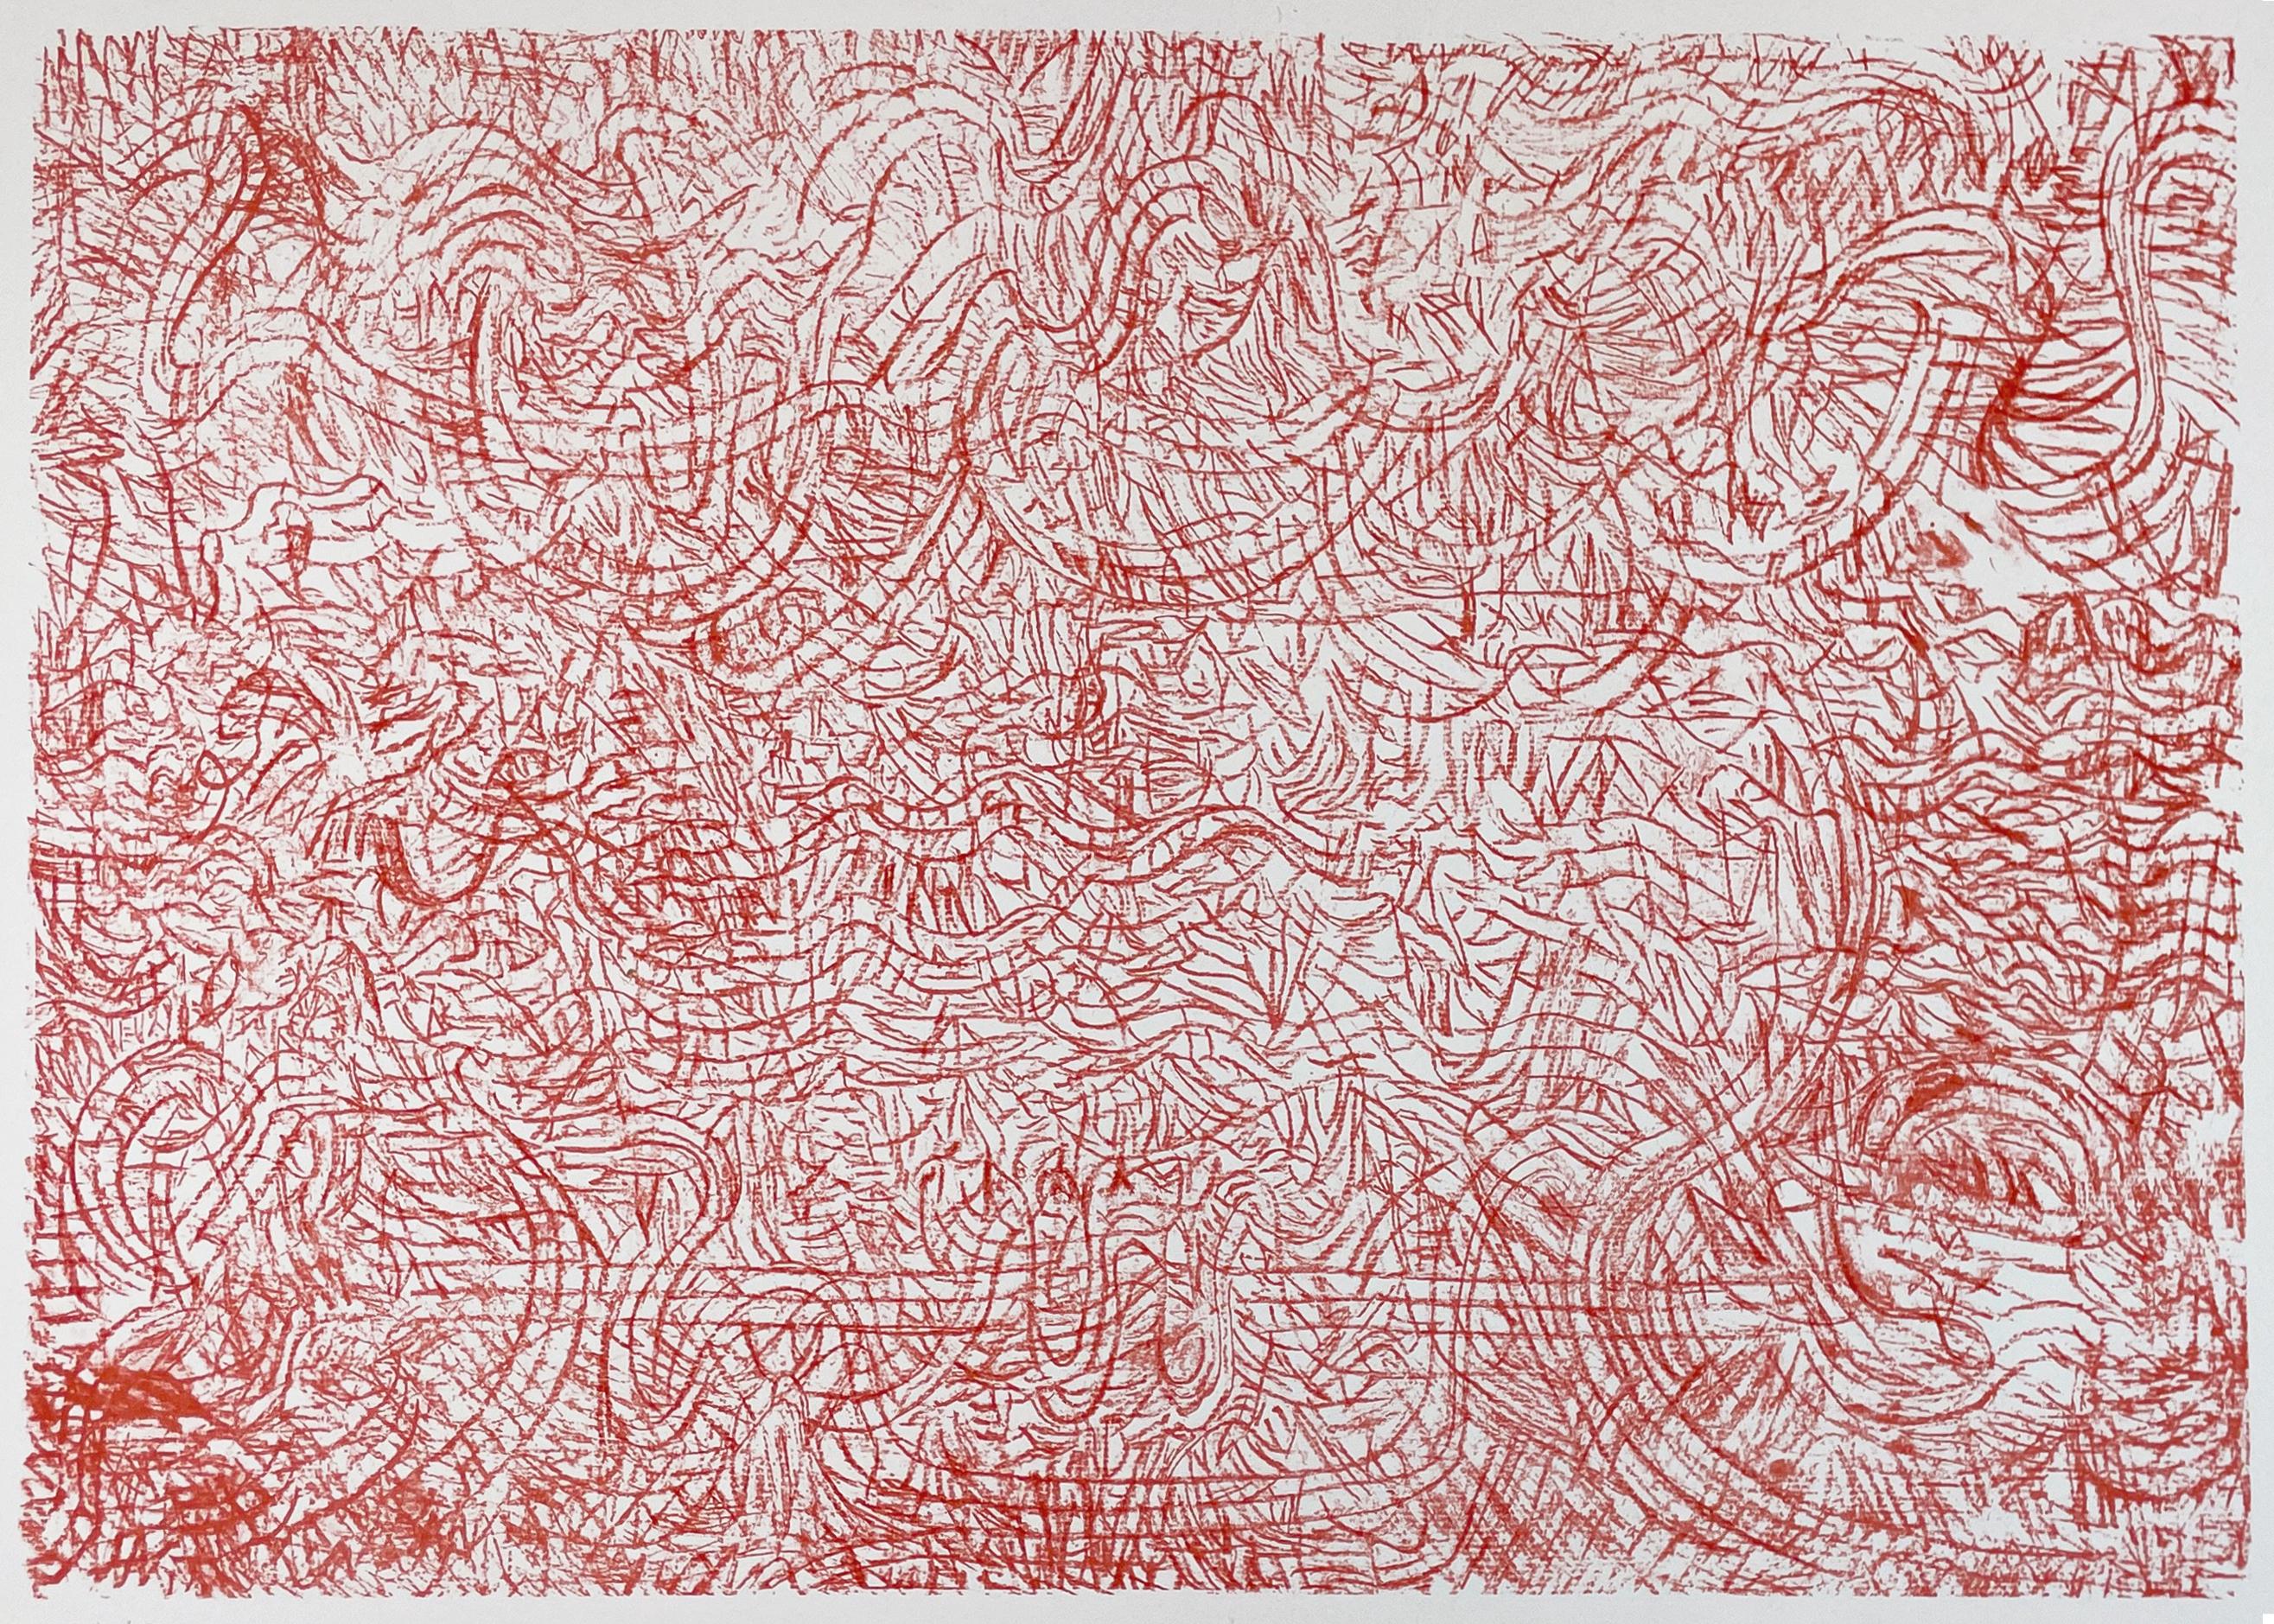 Une composition abstraite expressive et jubilatoire d'un rouge écarlate vibrant, où les marques de Mark Tobey, inspirées de la calligraphie, créent une matrice texturée de lignes qui semblent onduler et tourbillonner.

Mark Tobey, Mandarin et fleurs